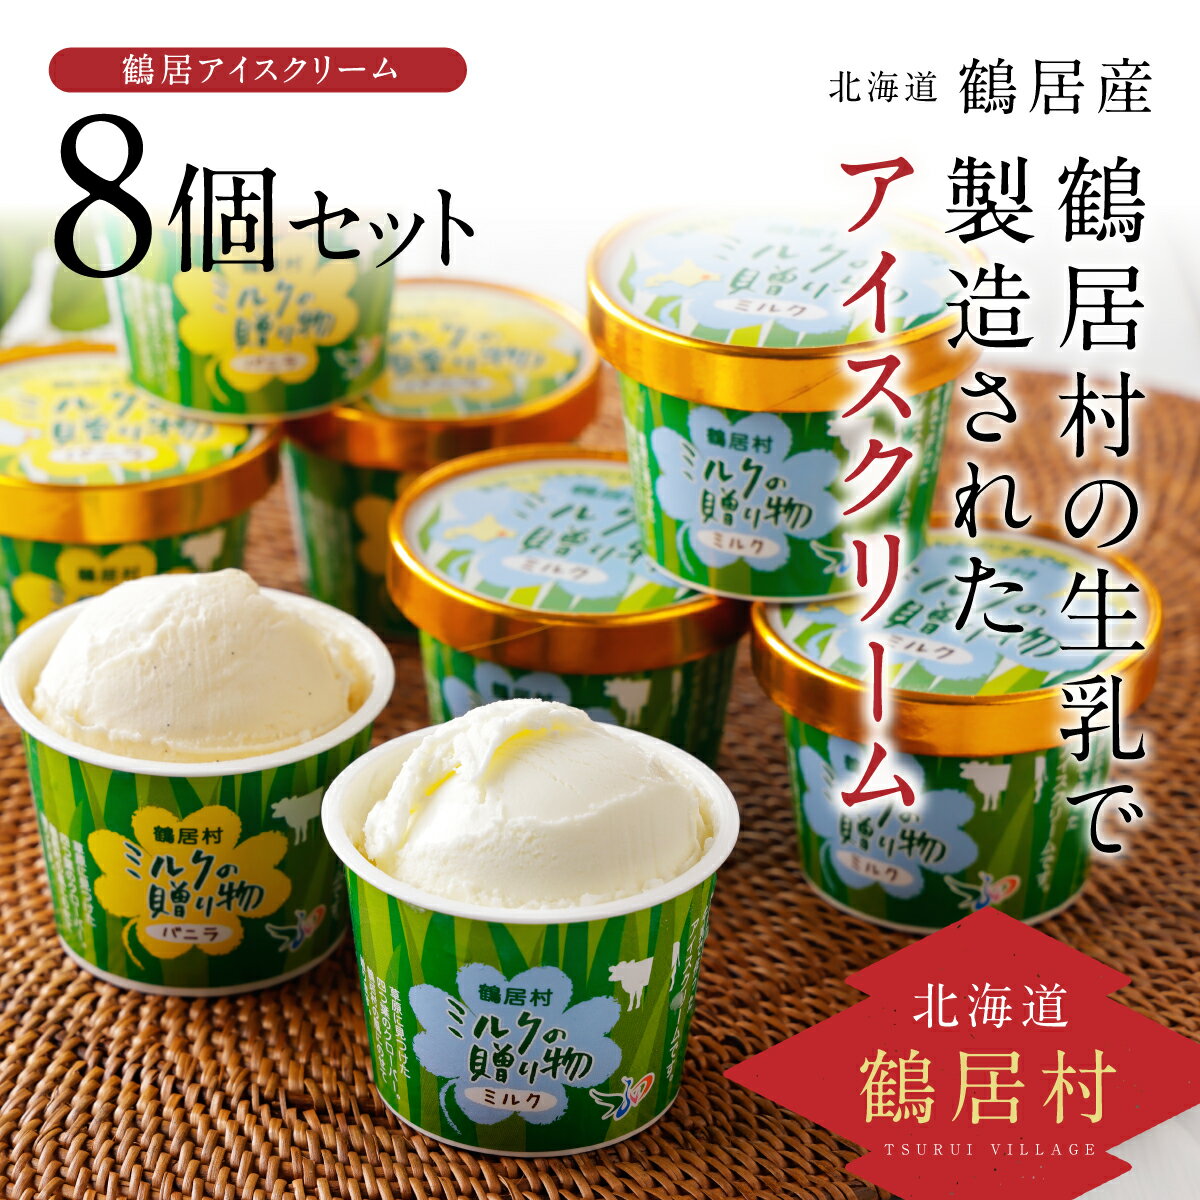 北海道 鶴居村 アイスクリーム ミルクの贈り物 8個セット